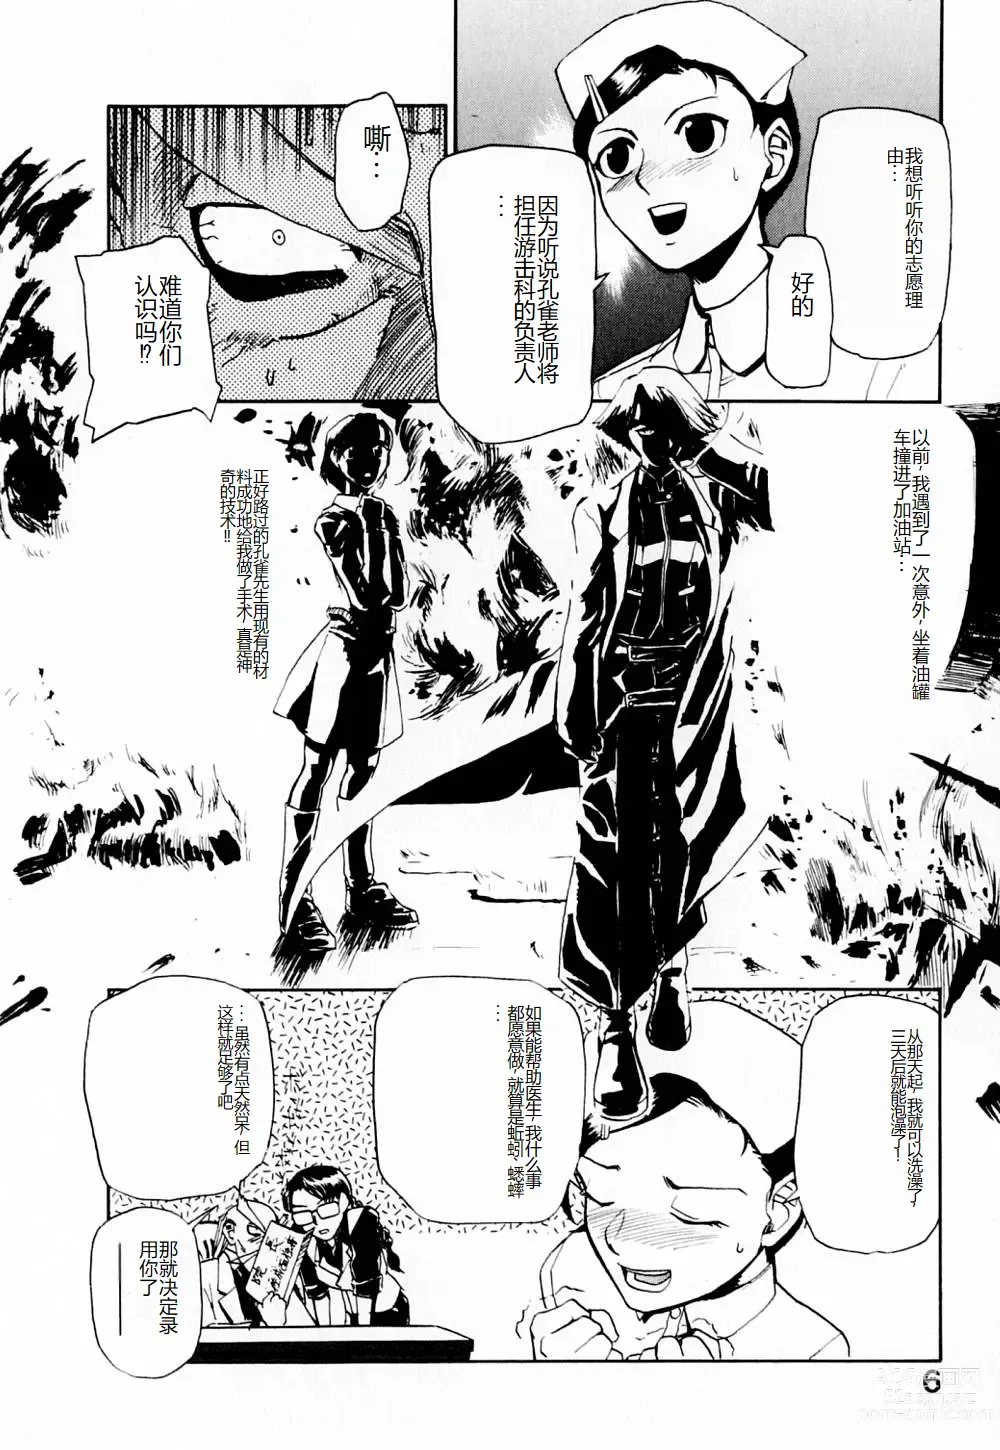 Page 11 of manga 去医院吧!!